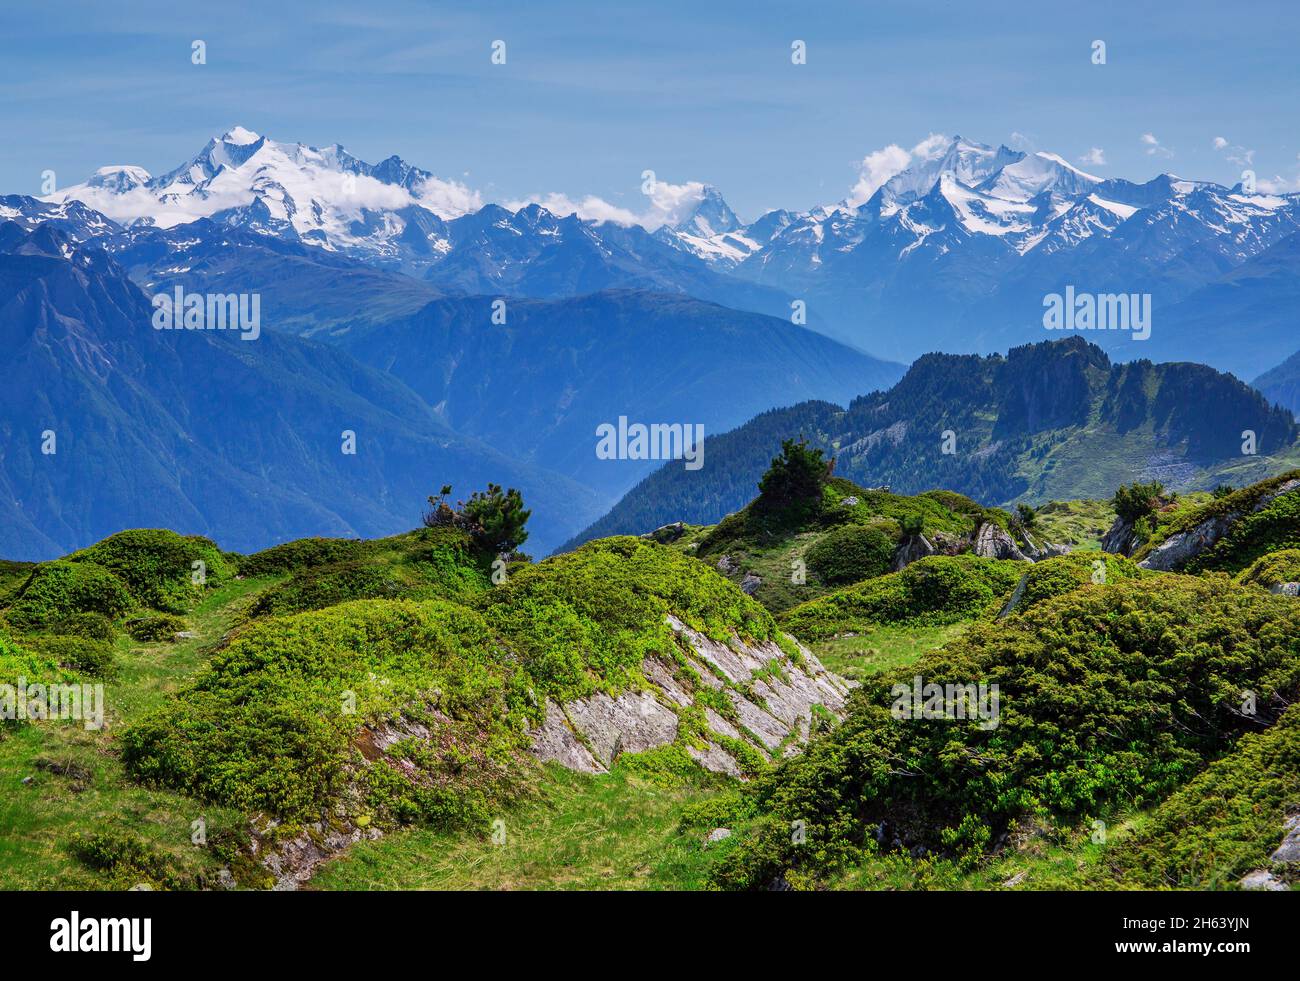 panorama sur le sommet avec dom 4545m, matterhorn 4478m et weisshorn 4505m de la région d'aletsch zone de randonnée, riederalp, valais alpes, valais, suisse Banque D'Images